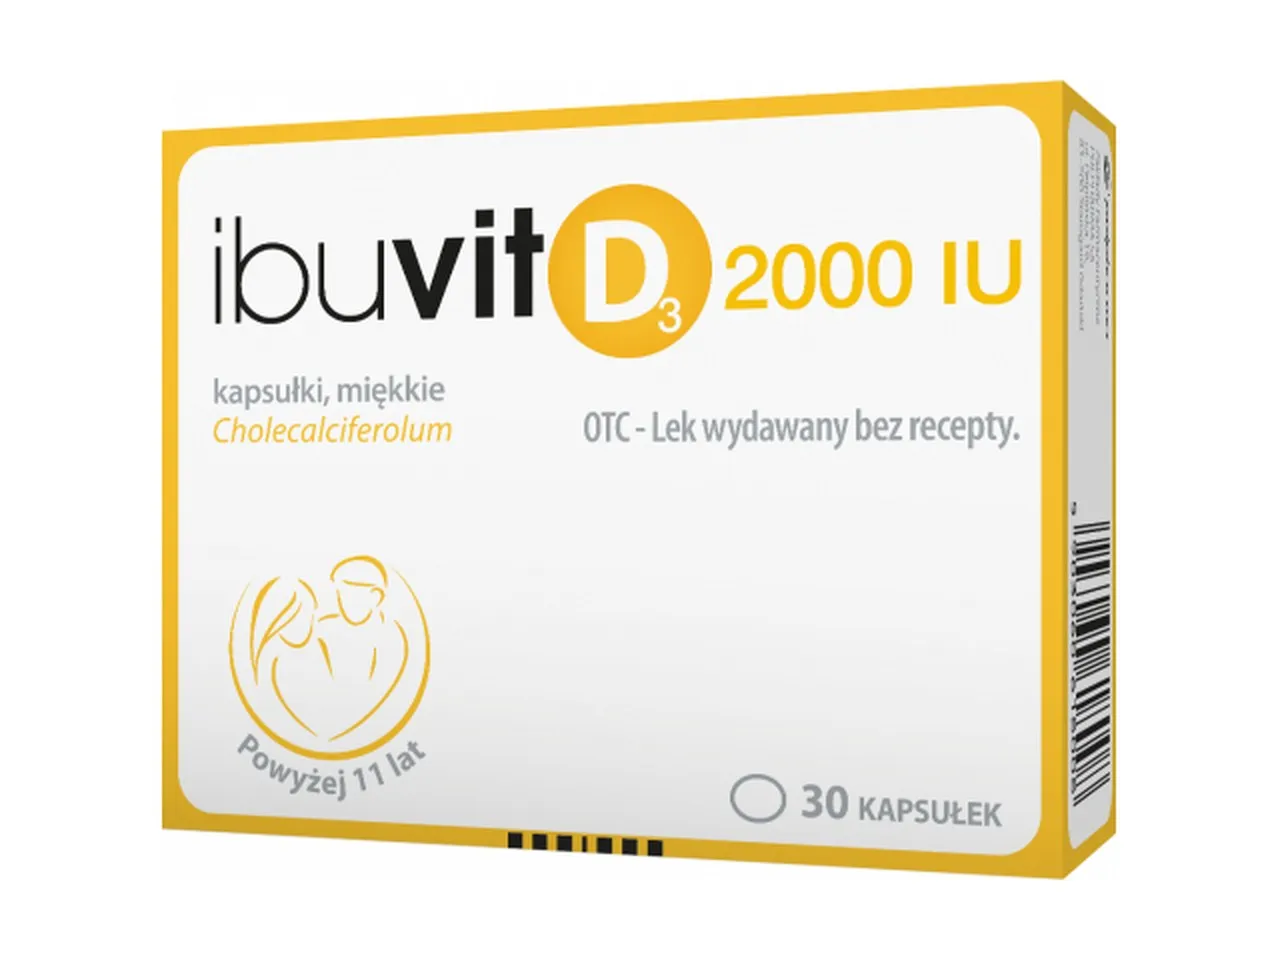 Ibuvit D3, 2000 IU, 30 kapsułek